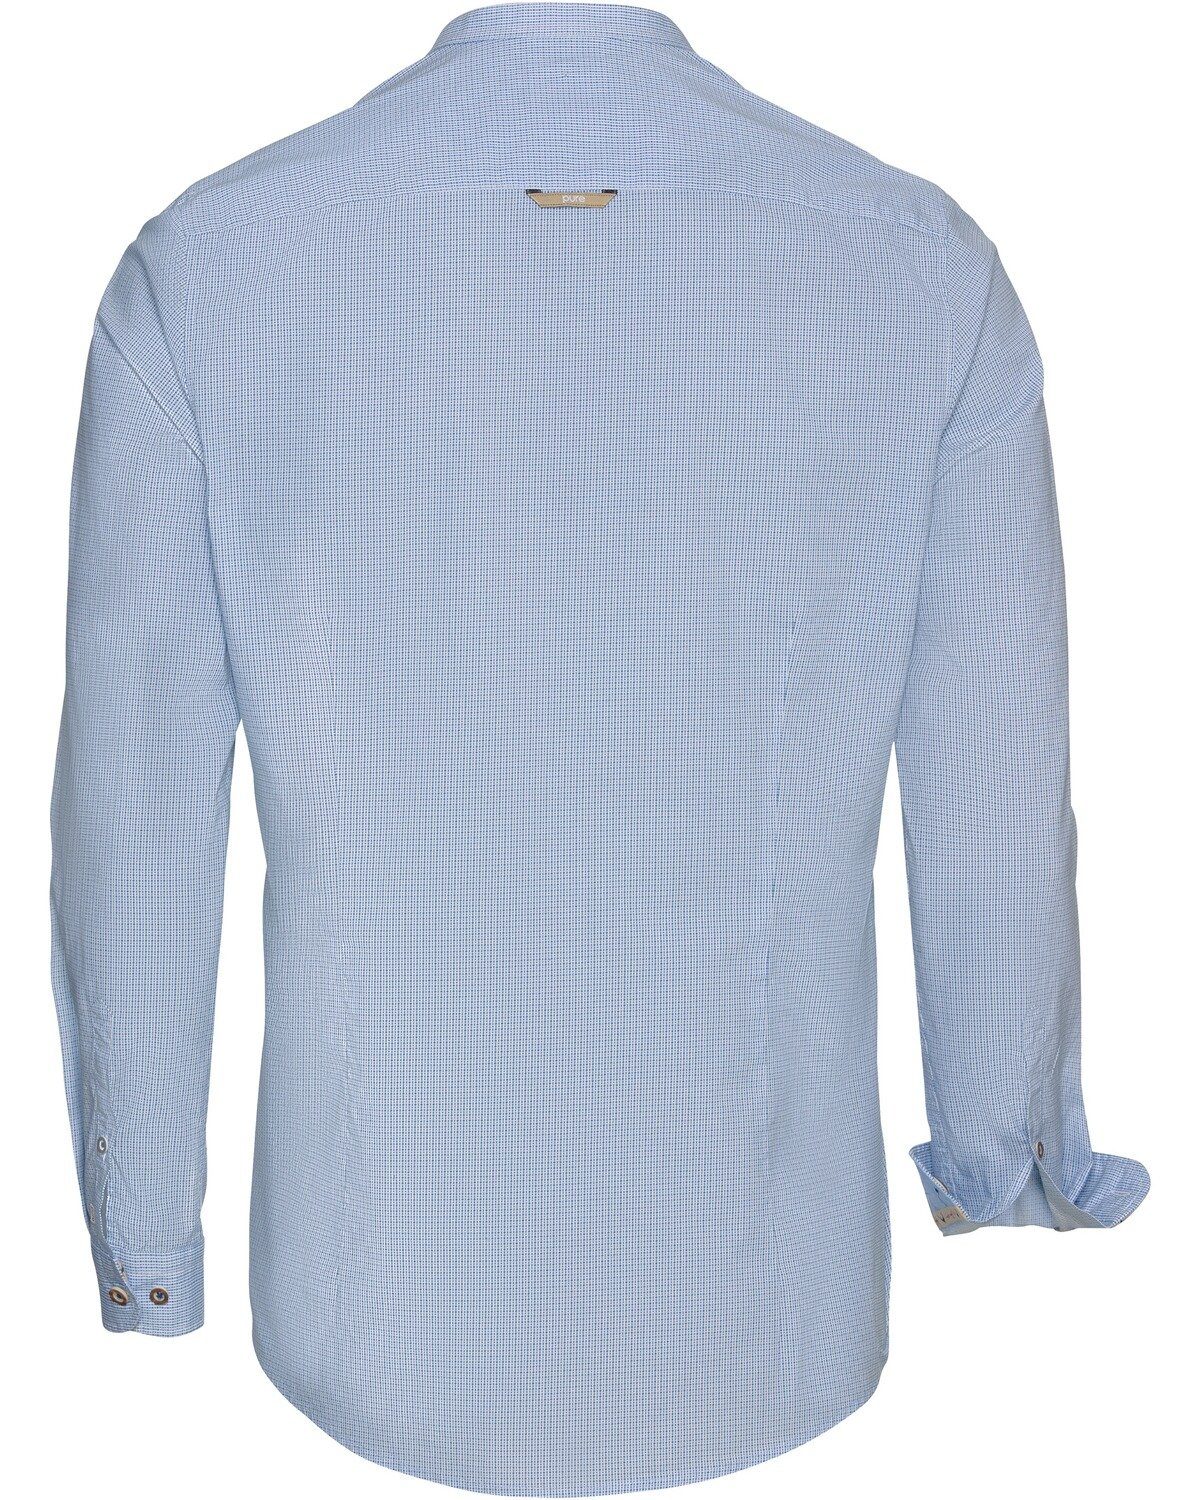 Blau Allover-Muster mit Trachtenhemd Stehkragenhemd Pure